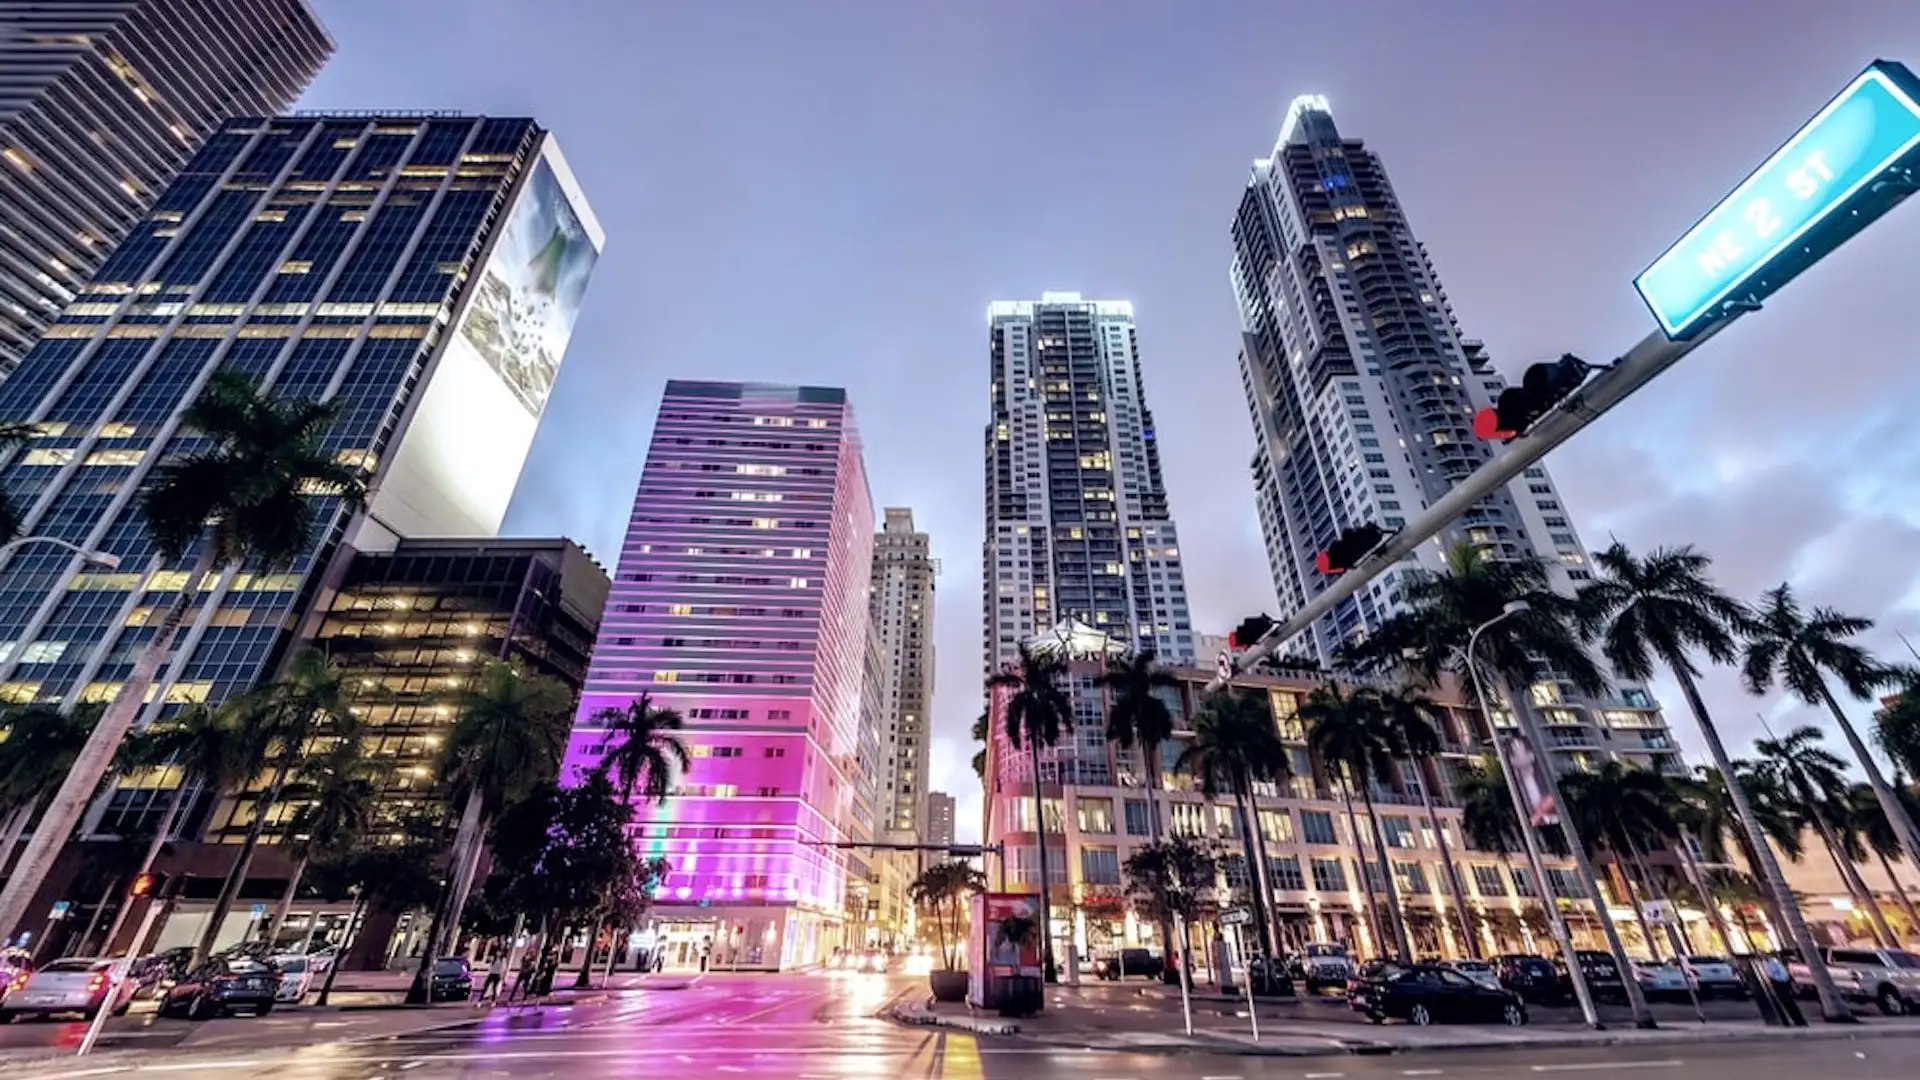 Rentar un auto en el downtown de Miami Title: Miami Downtown